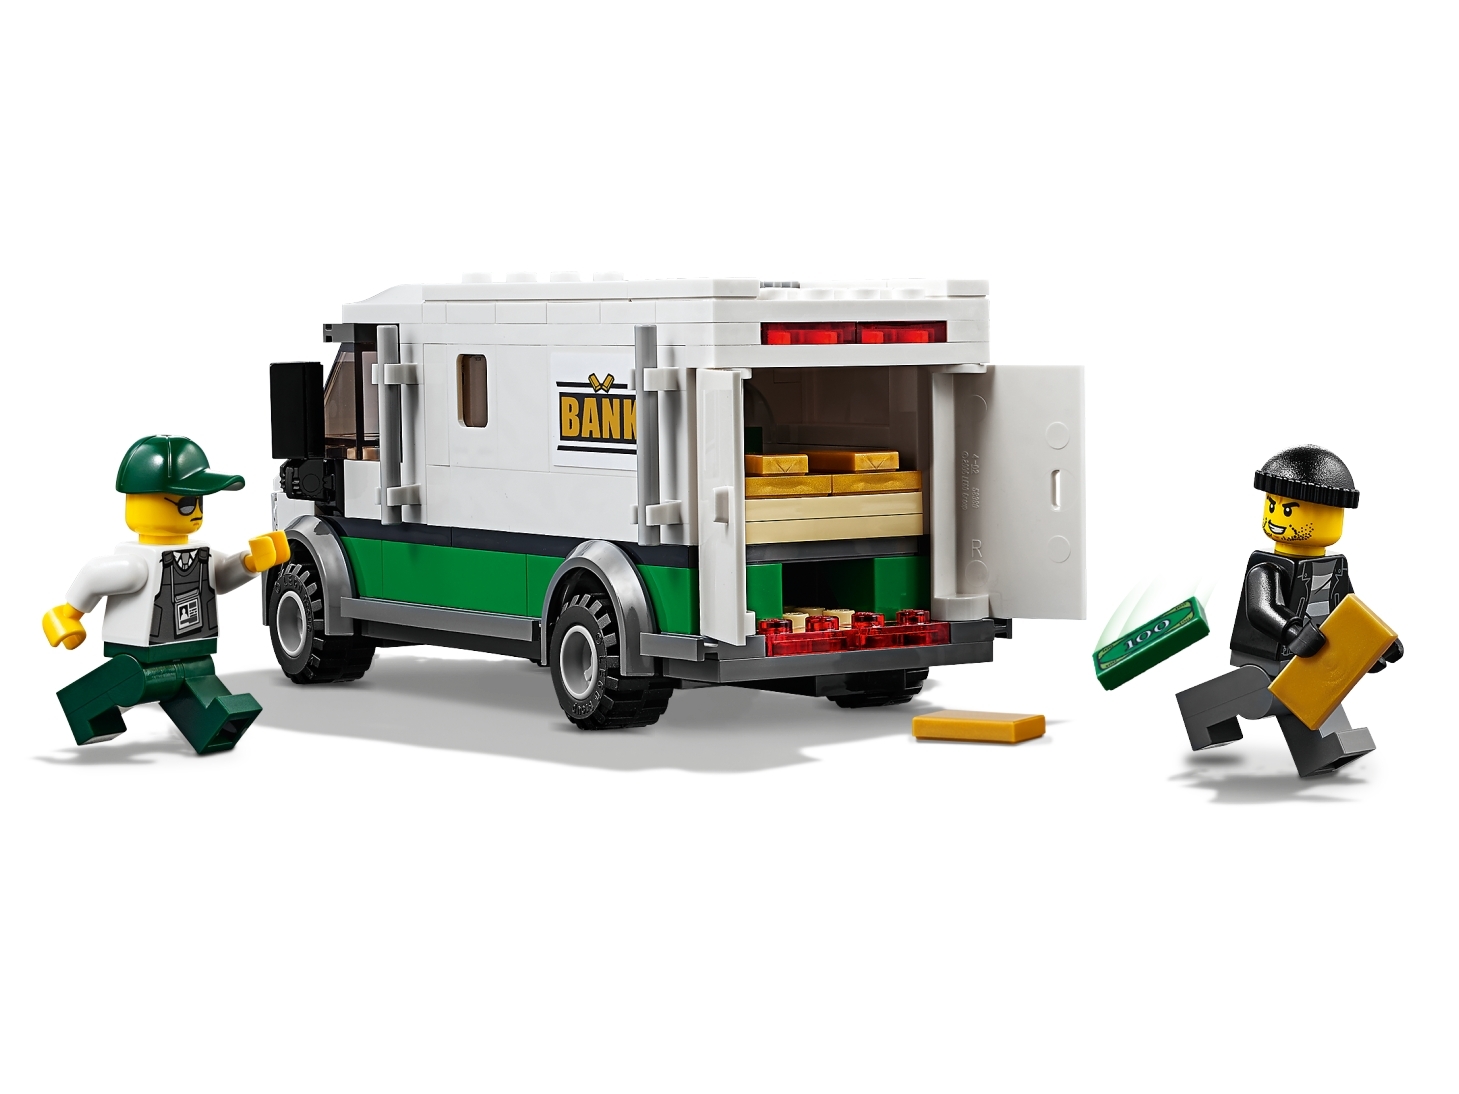 LEGO 60198 City Güterzug, mit batteriebetriebenem Motor, Bluetooth-Fernbedienung